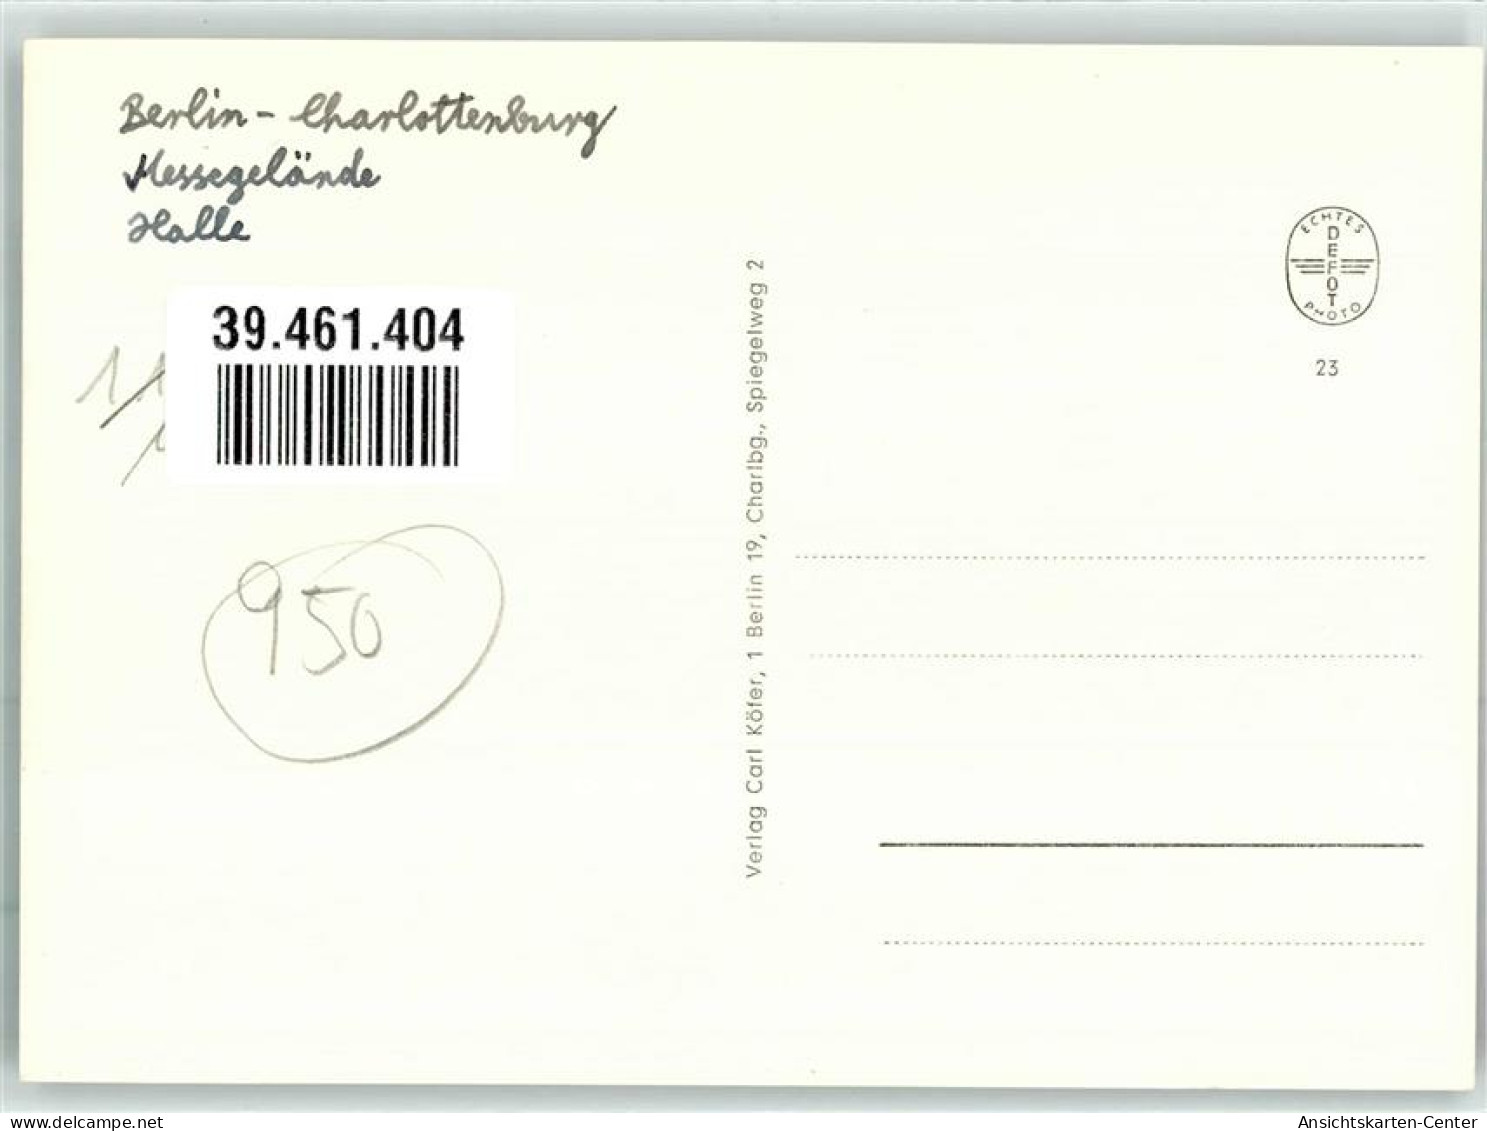 39461404 - Westend - Charlottenburg